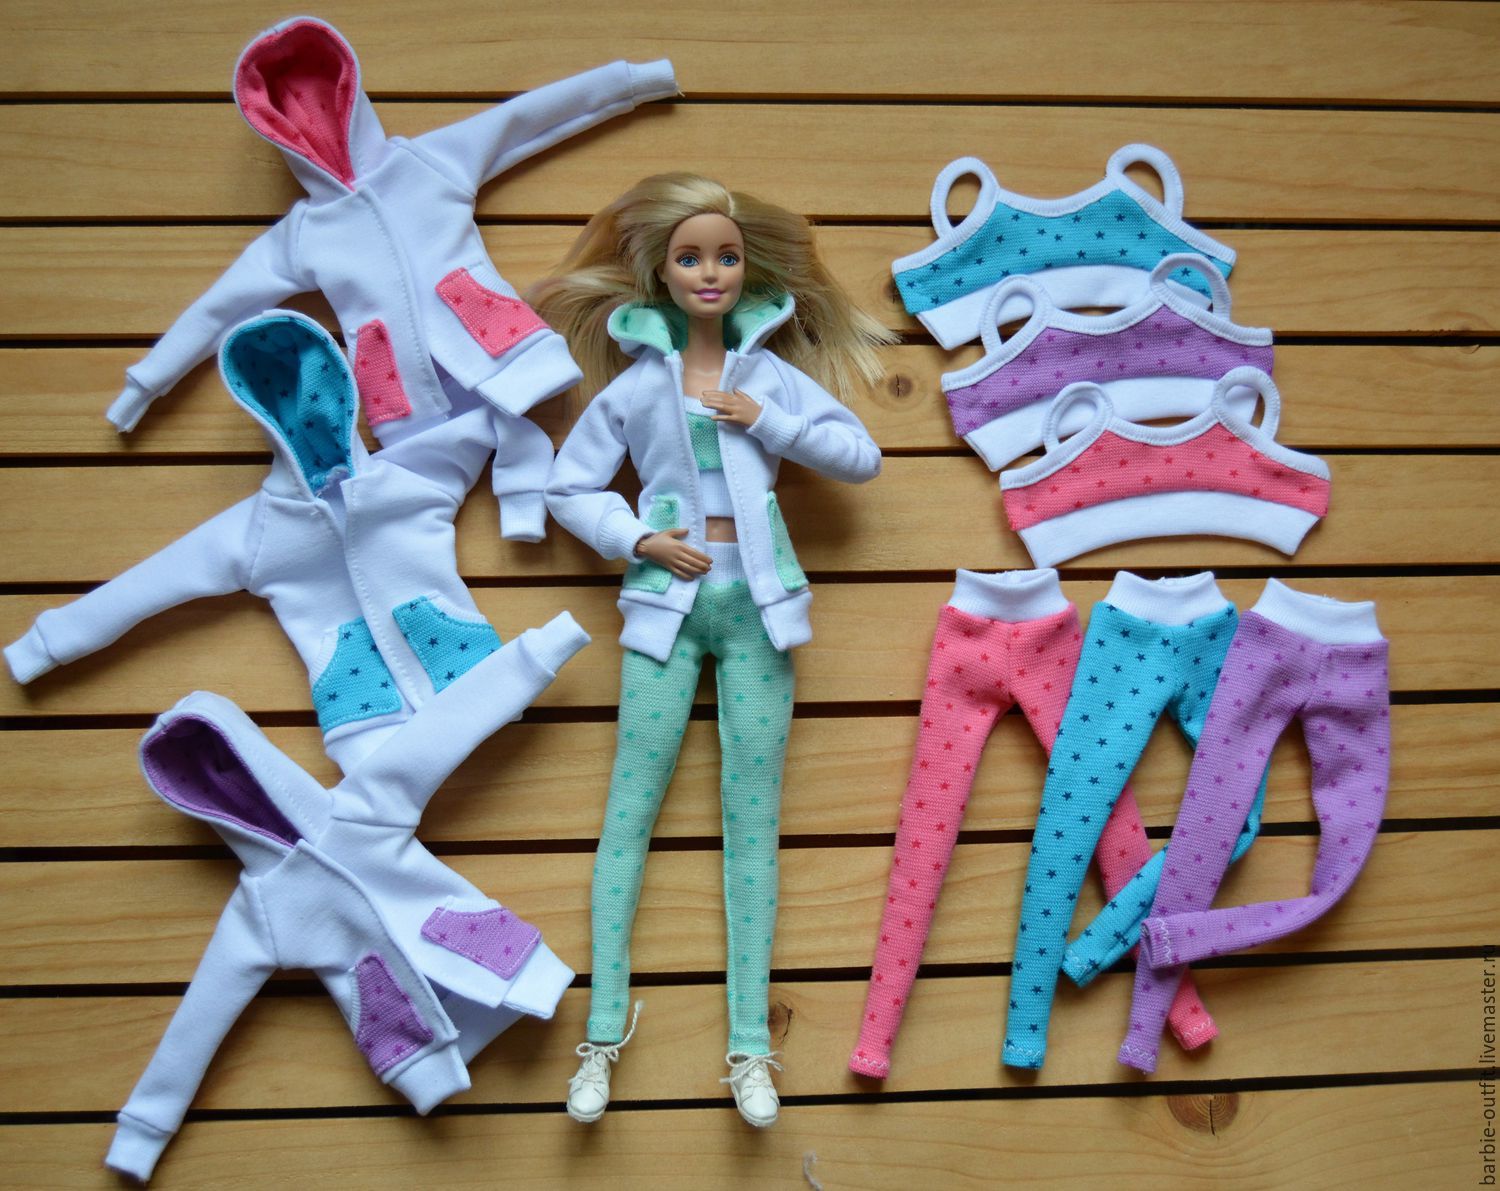 Как сшить спортивный костюм для куклы Барби / How to sew a tracksuit for a Barbie doll